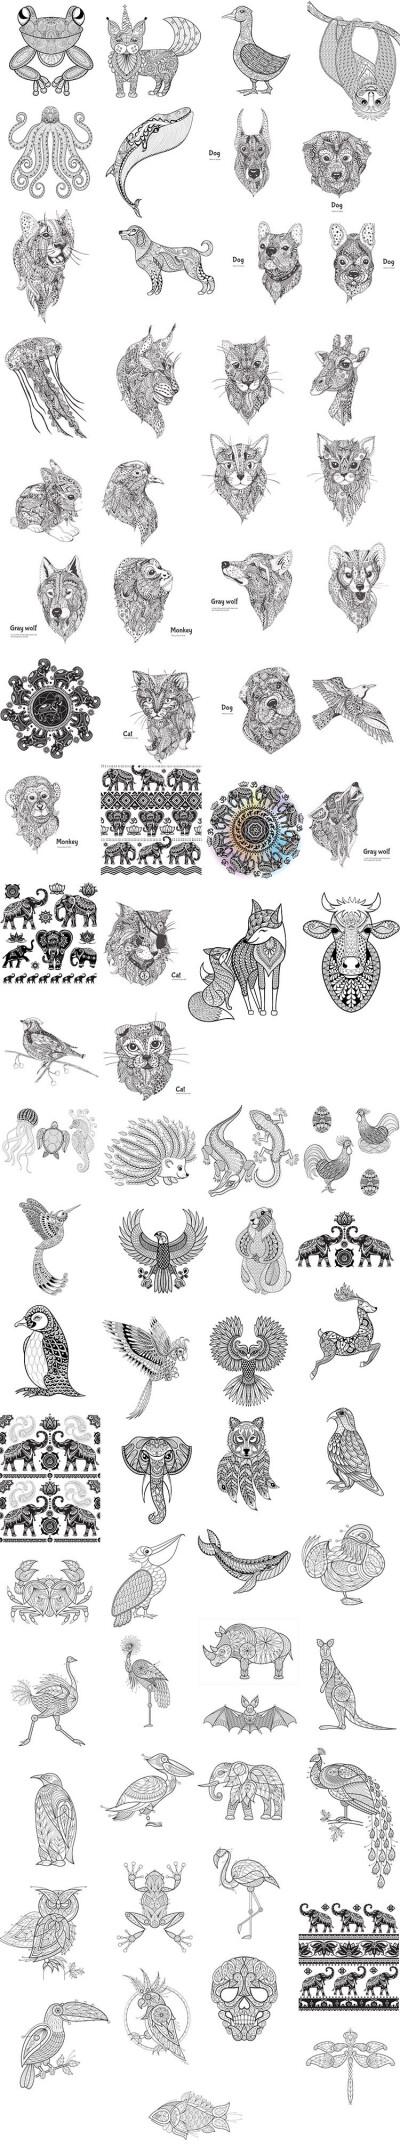 76张黑白动物几何创意线稿卡通手绘插画图腾装饰画缠绕画展览矢量素材